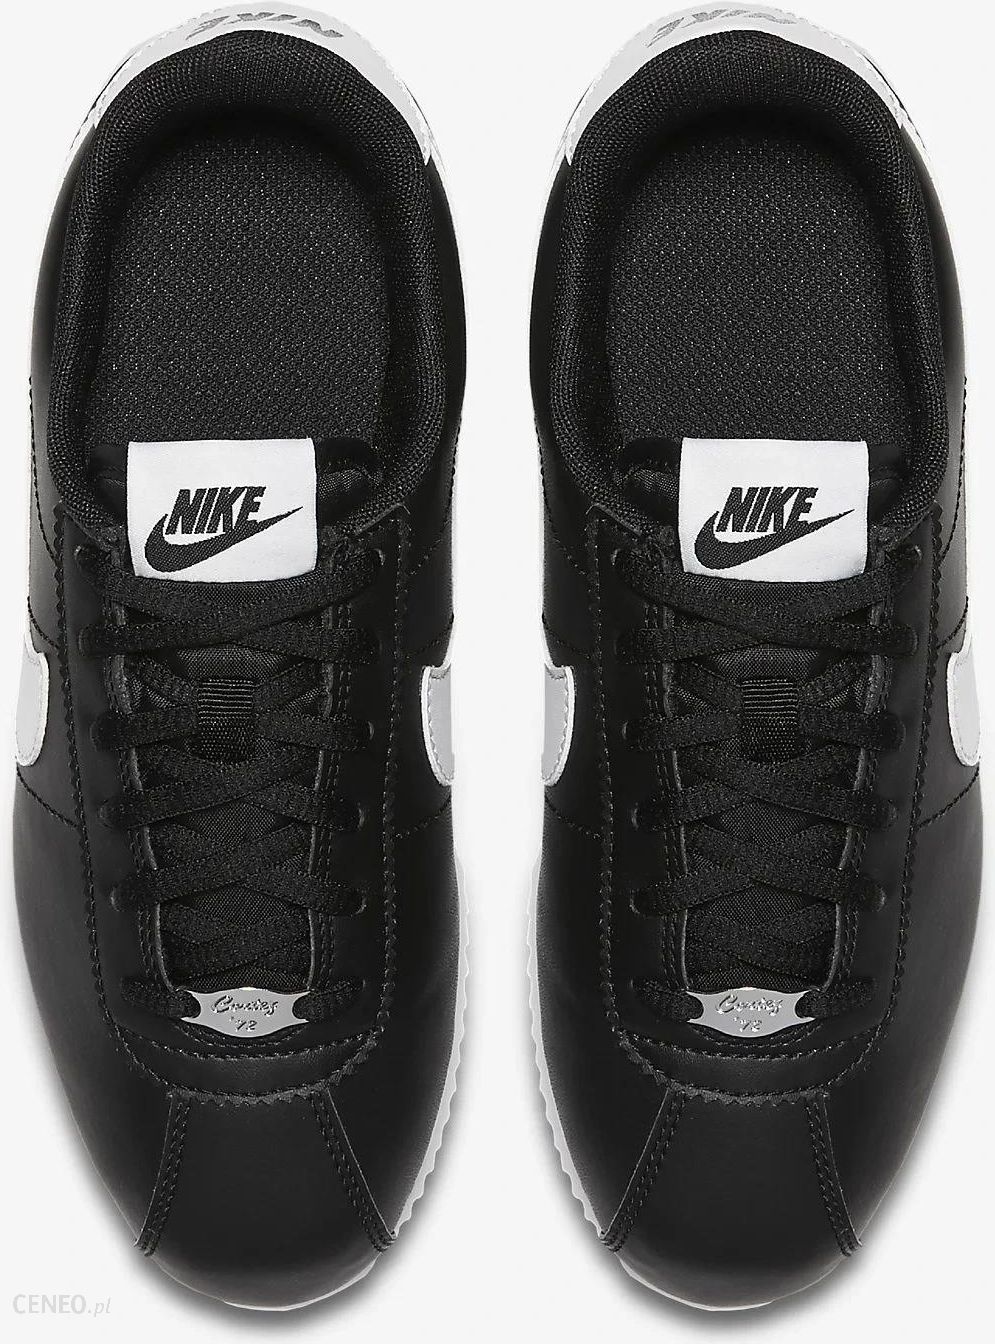 Buty Nike Cortez Basic 904764 001 r. 38 24cm Black - Ceny i opinie